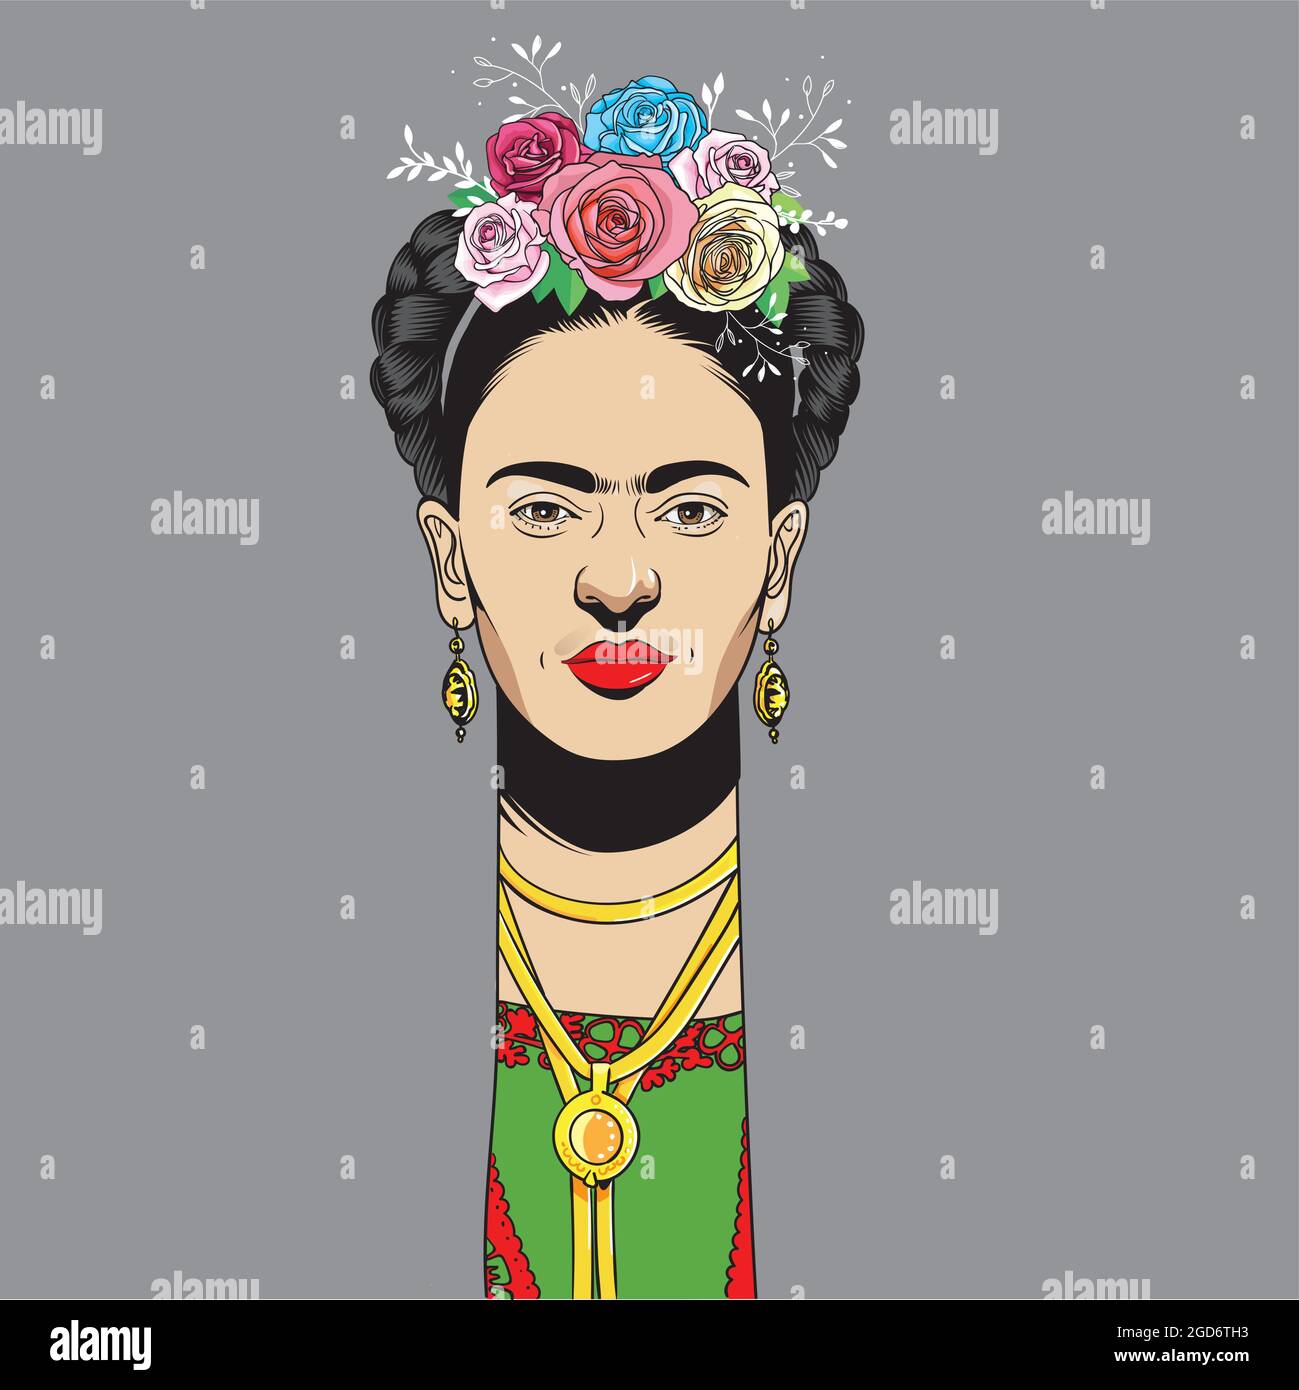 Frida Kahlo ritratto in stile cartoon, era una pittrice messicana conosciuta per i suoi molti ritratti, autoritratti, e opere ispirate alla natura e artif Illustrazione Vettoriale